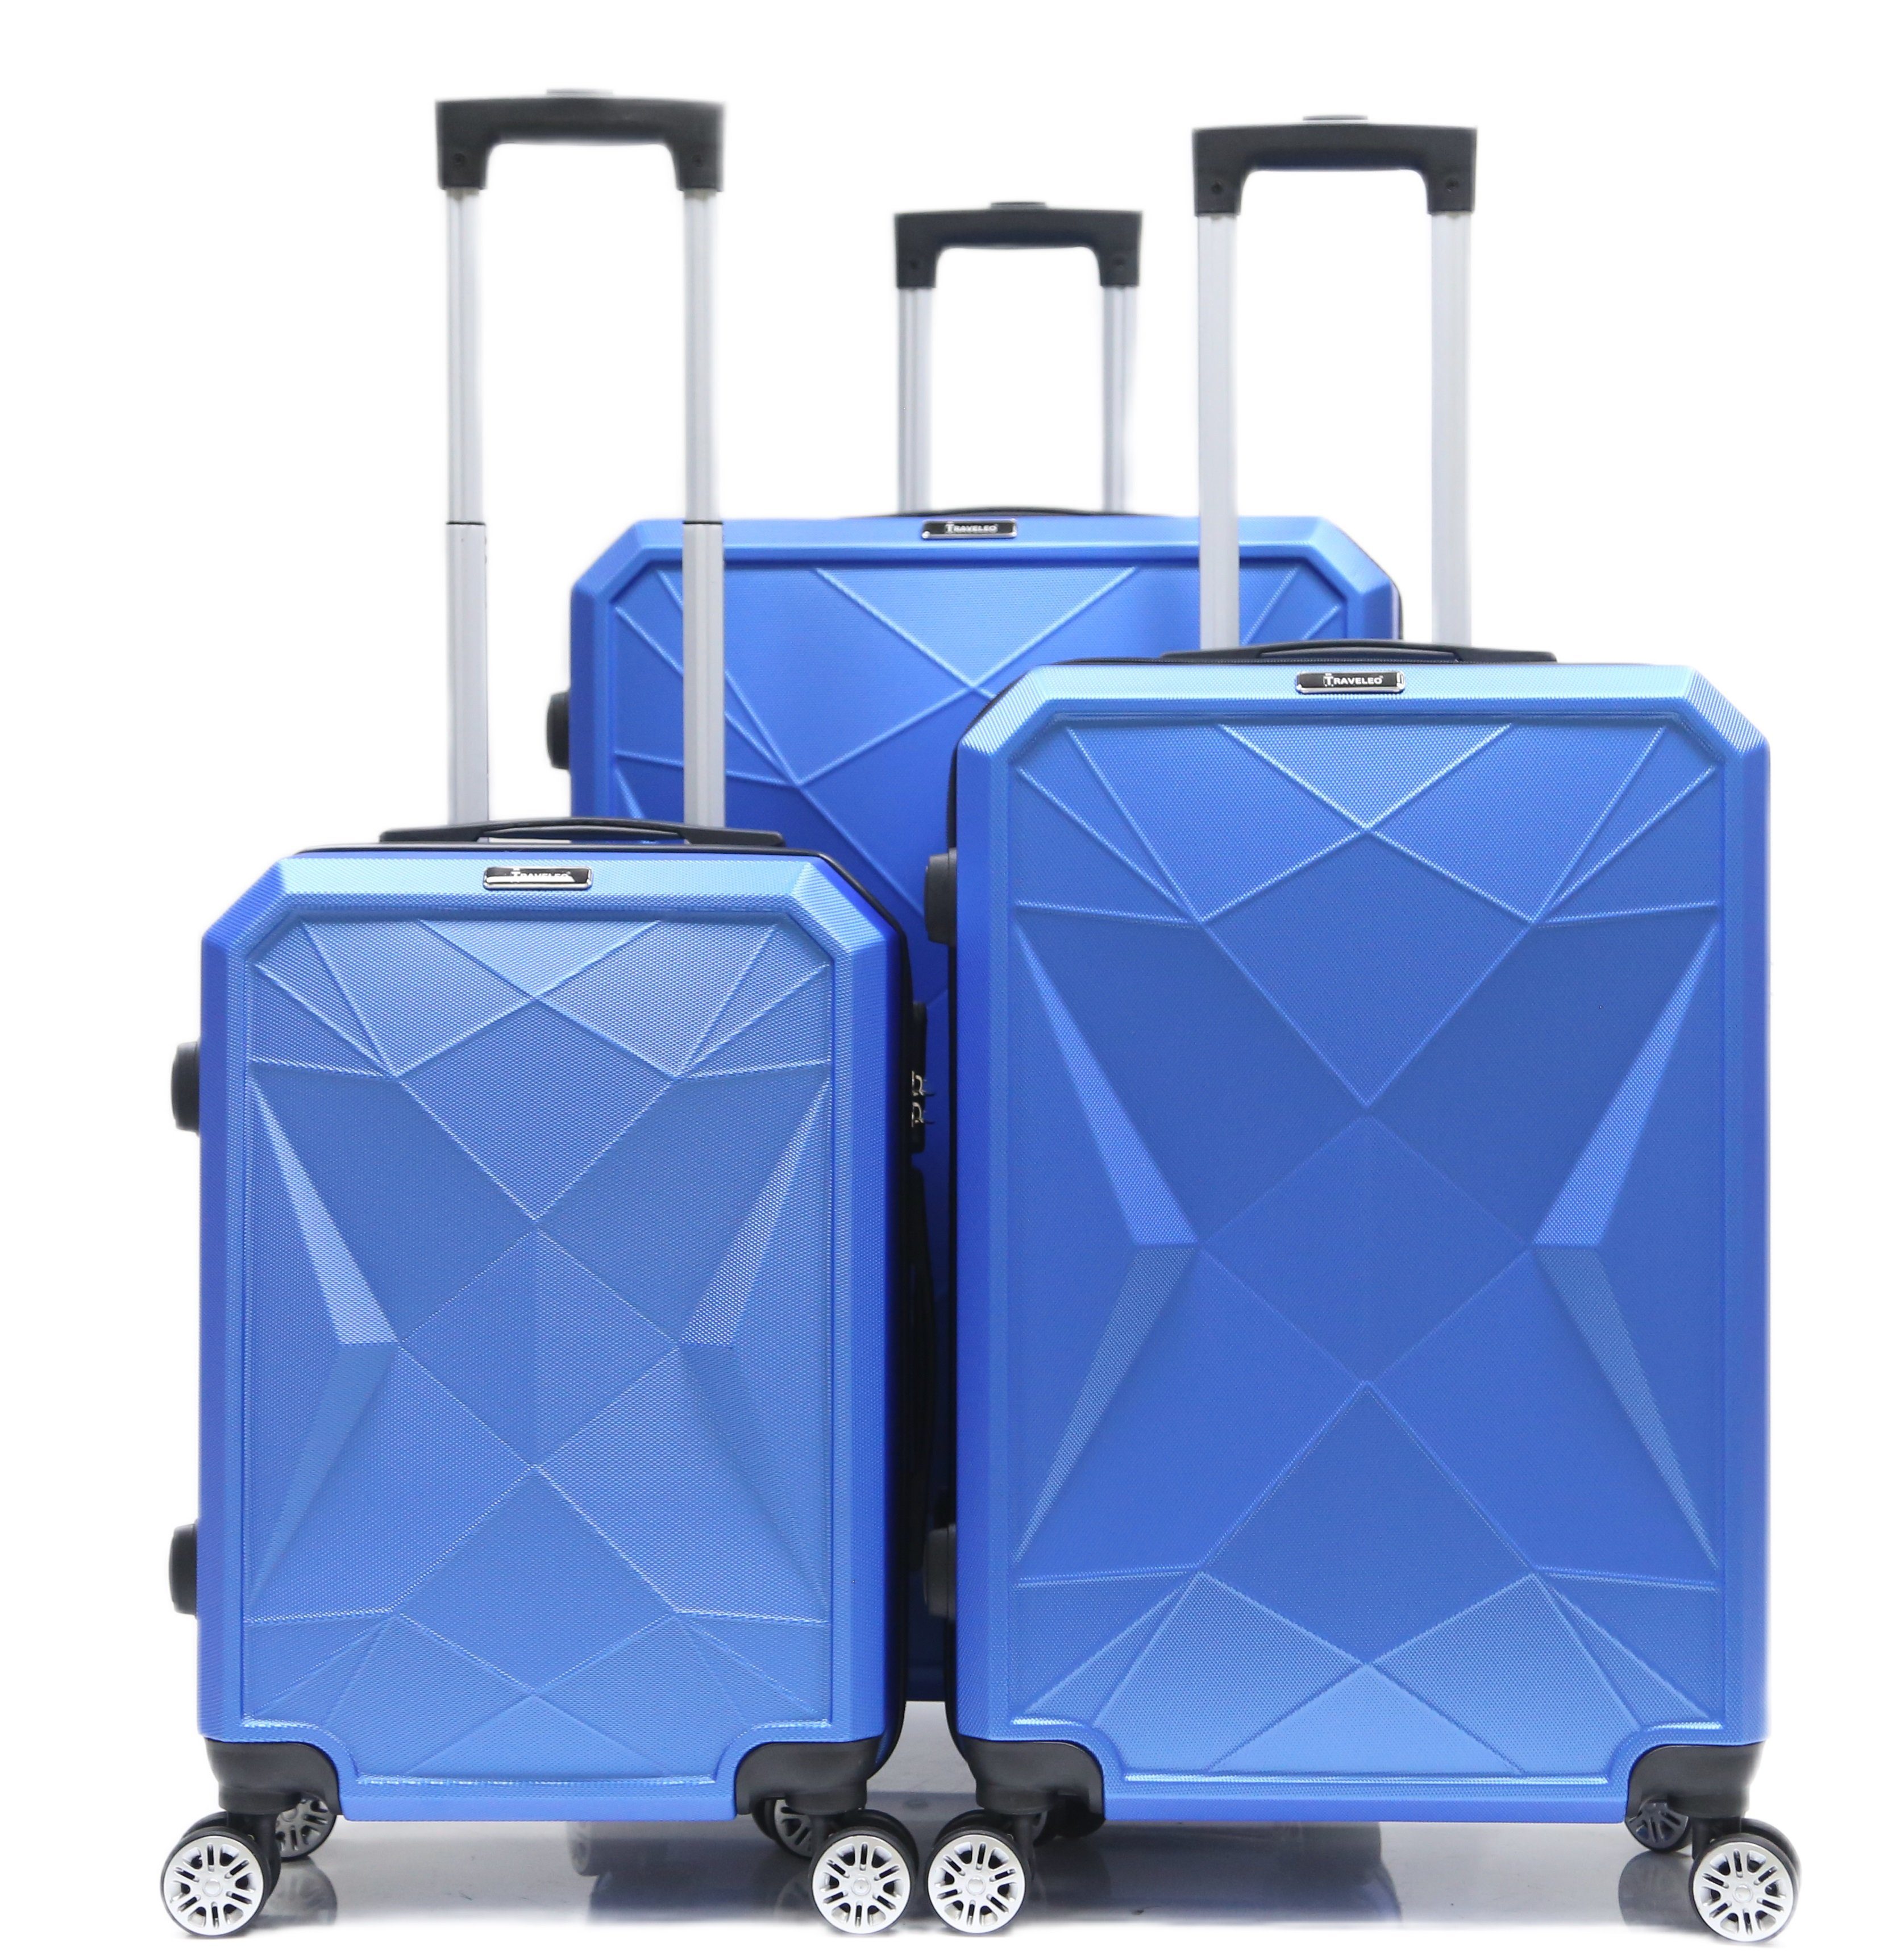 Set tlg) Blau 3-teilig (3 Rollen, Hartschale Kofferset ABS-03 Reisekoffer Koffer Trolley Cheffinger Kofferset, 4